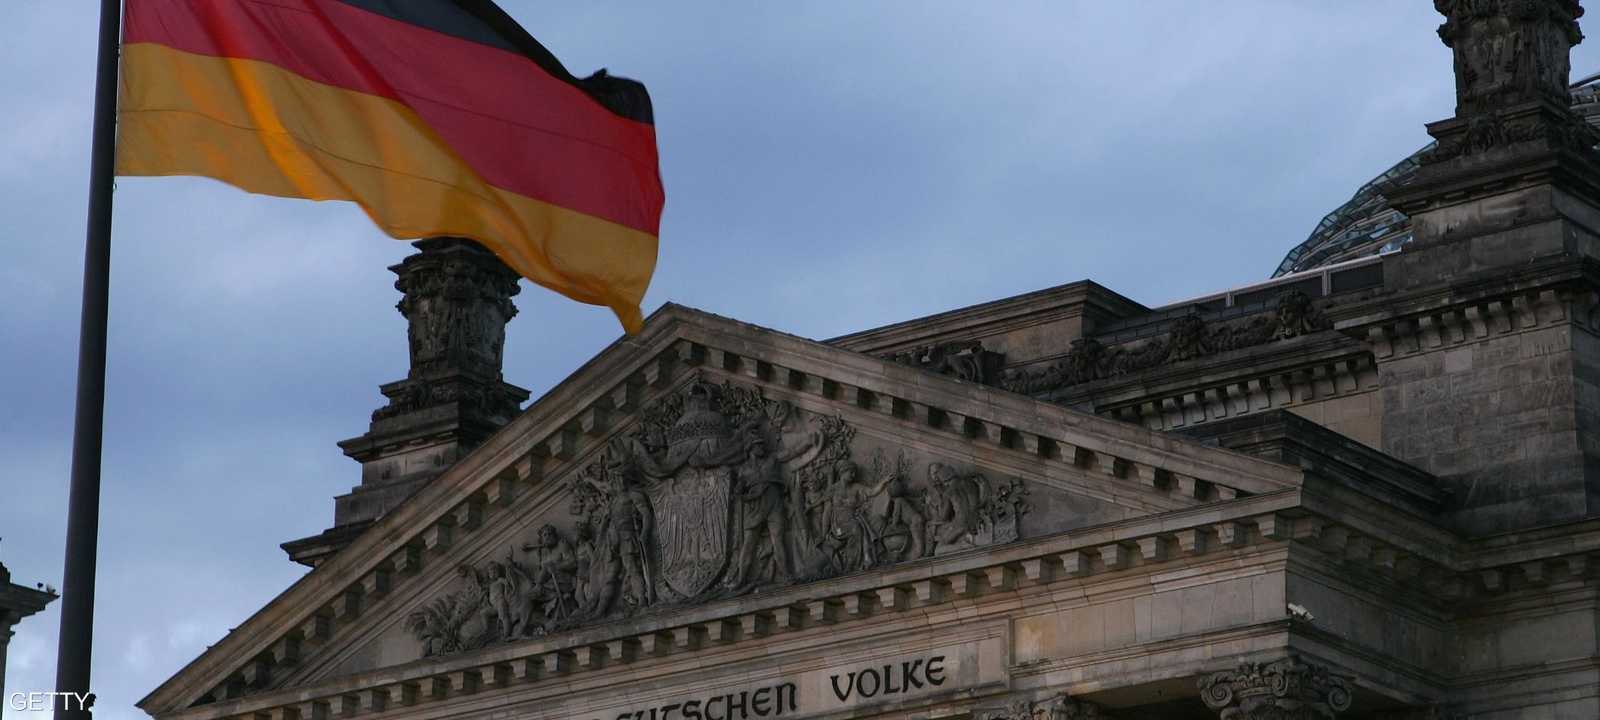 تواجه ألمانيا أعمق ركود منذ الحرب العالمية الثانية